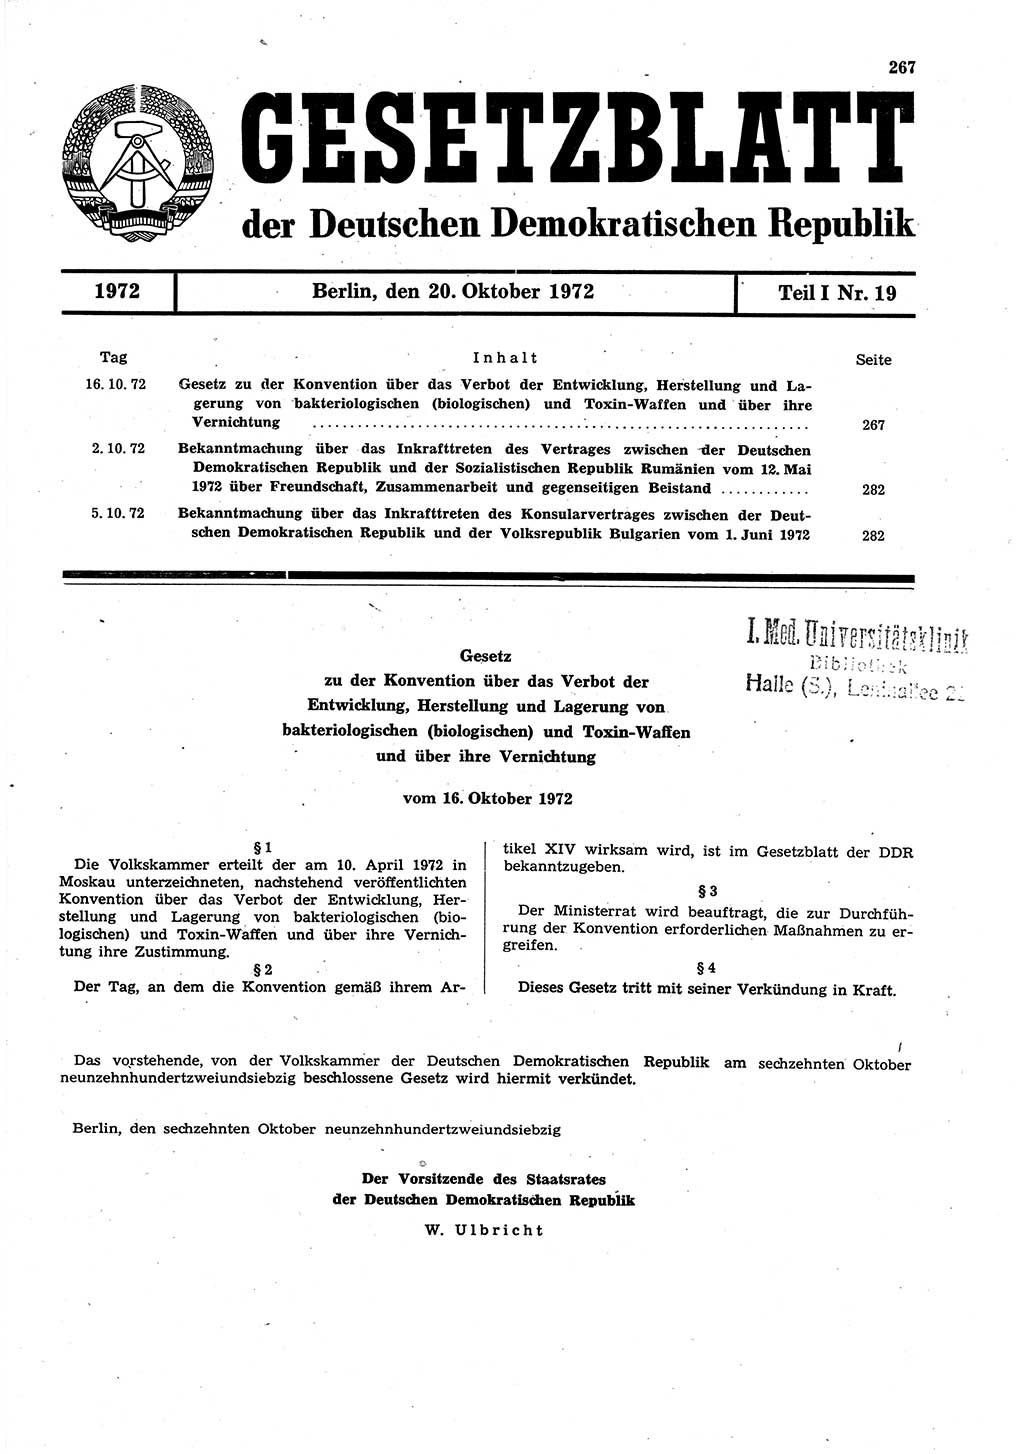 Gesetzblatt (GBl.) der Deutschen Demokratischen Republik (DDR) Teil Ⅰ 1972, Seite 267 (GBl. DDR Ⅰ 1972, S. 267)